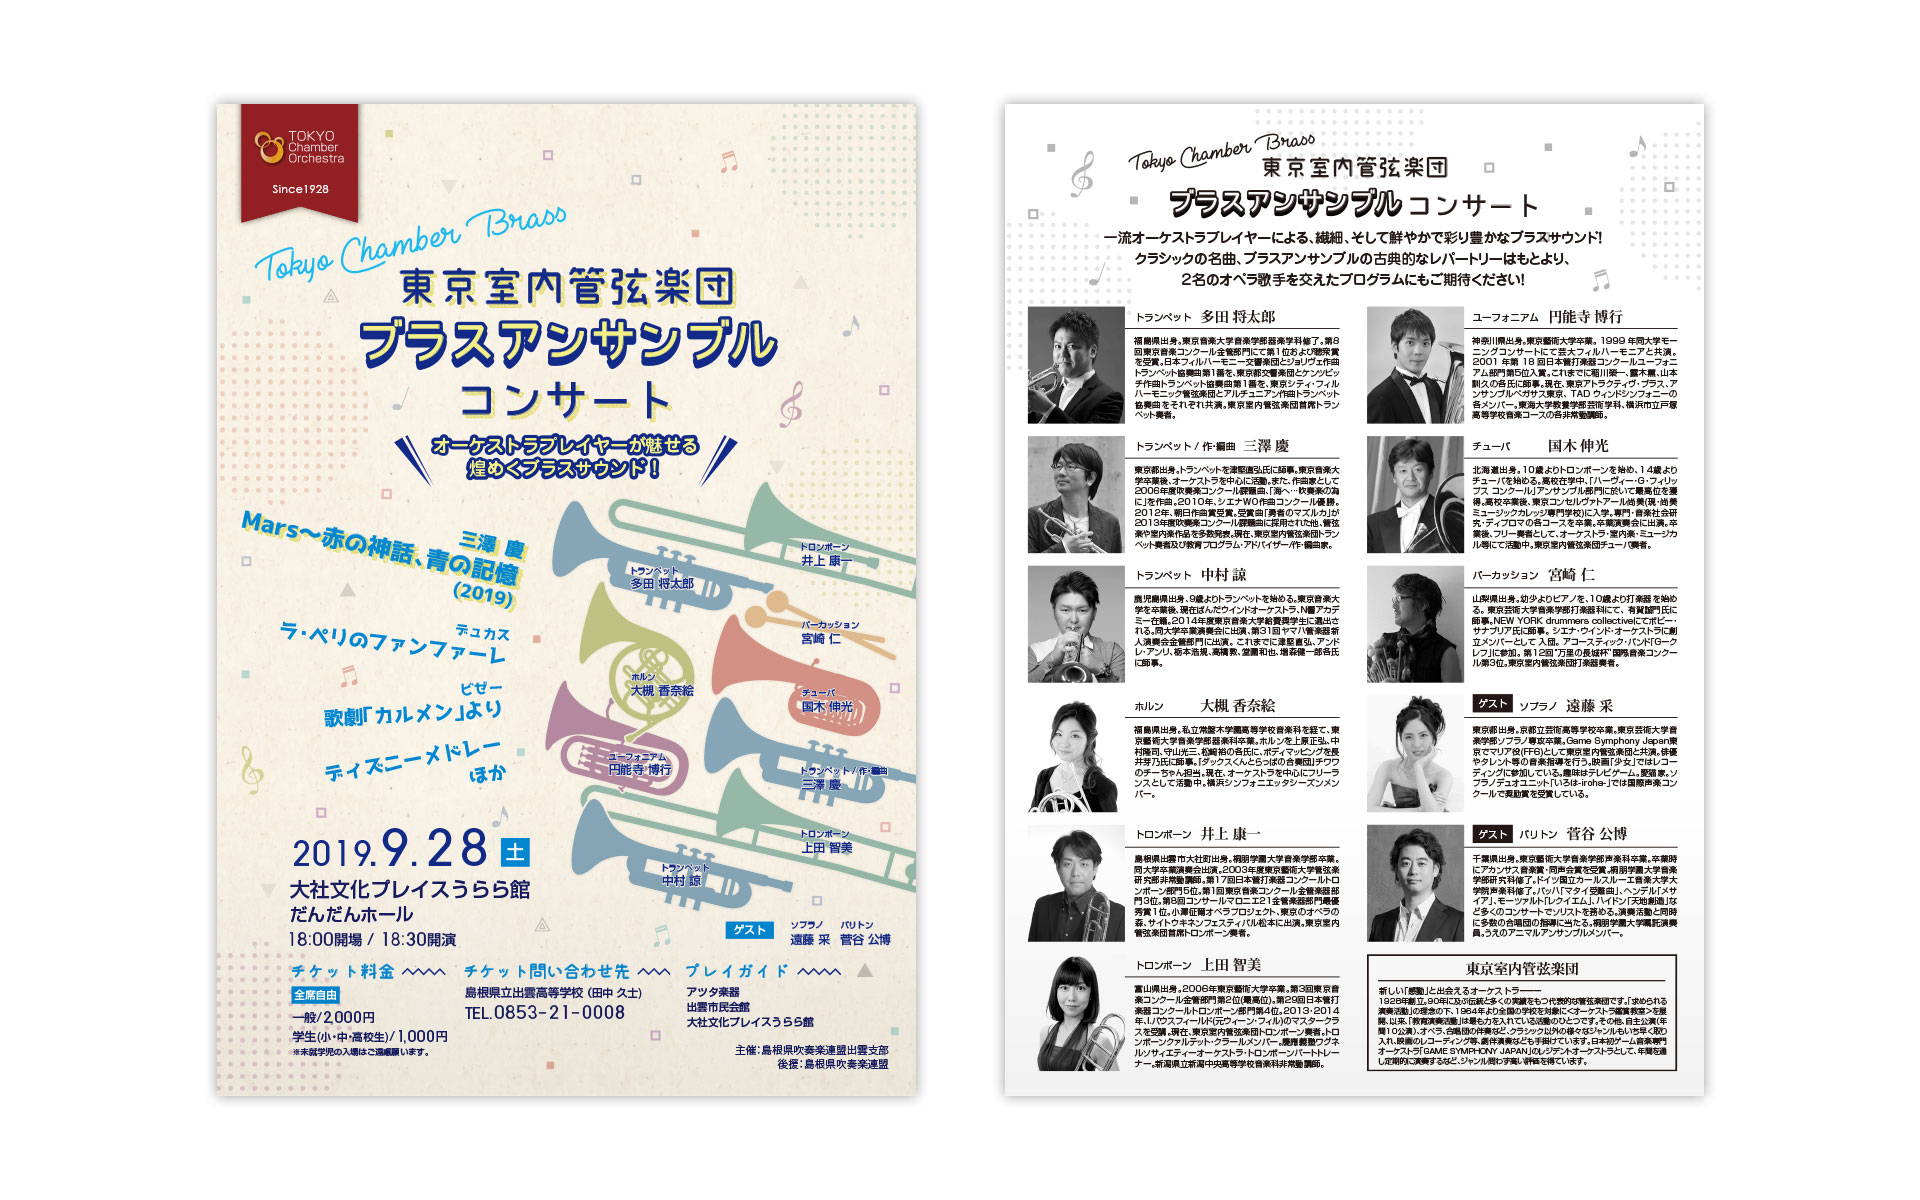 東京室内管弦楽団 ブラスアンサンブルコンサート チラシ